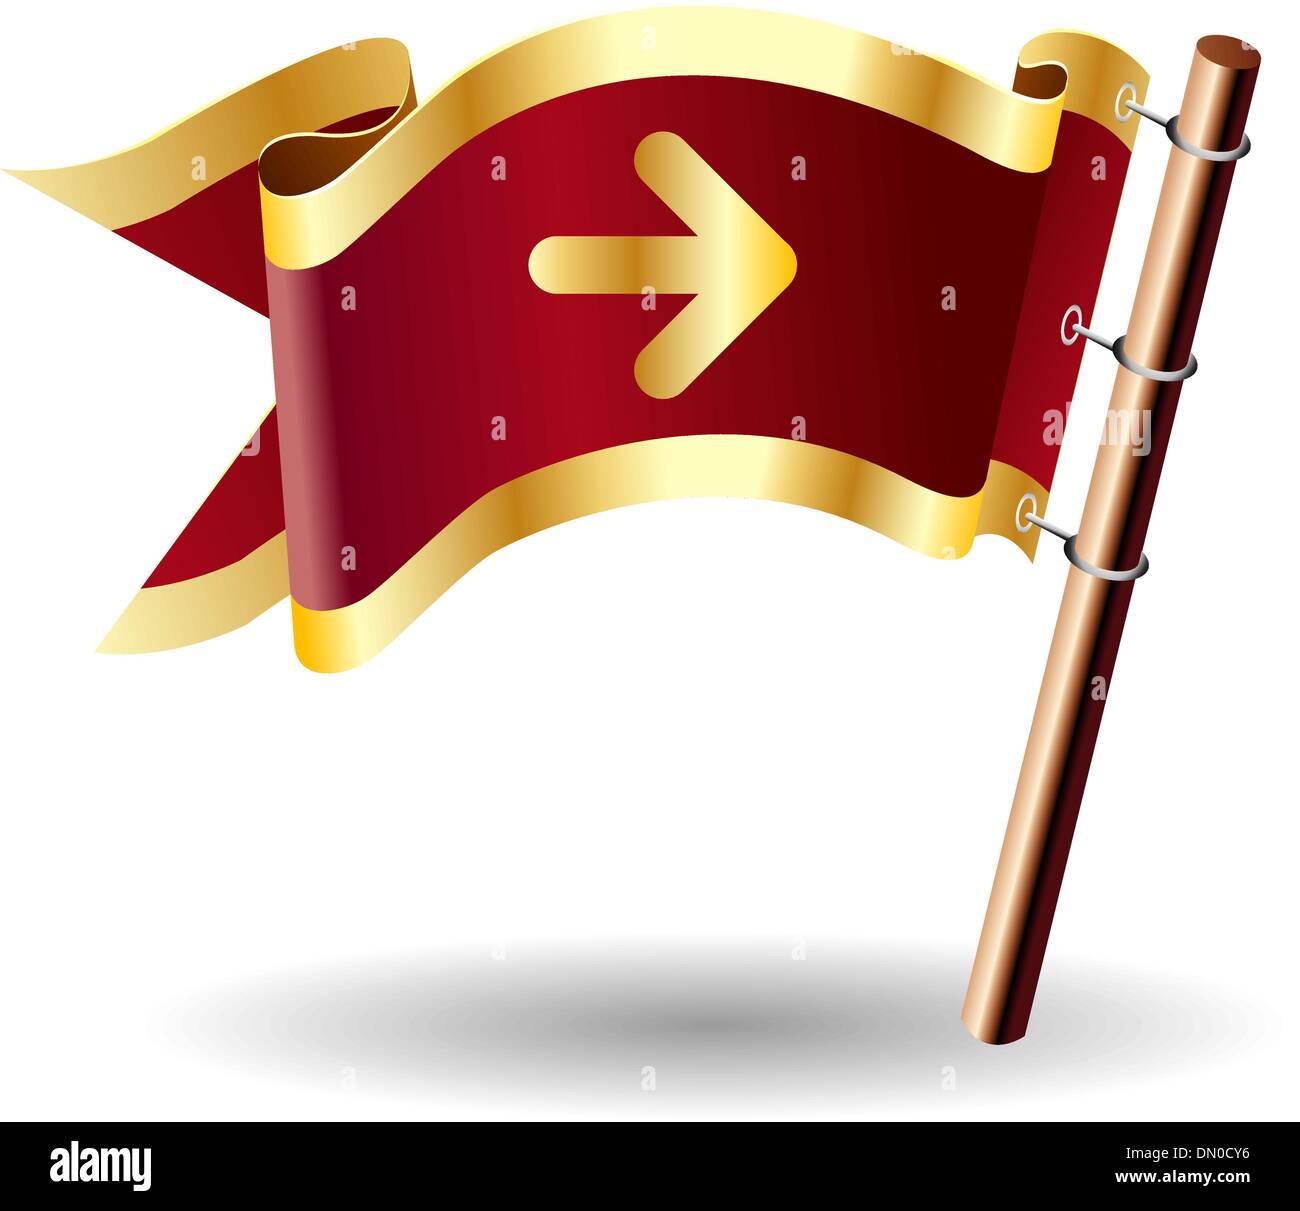 Directional arrow royal flag Stock Vector